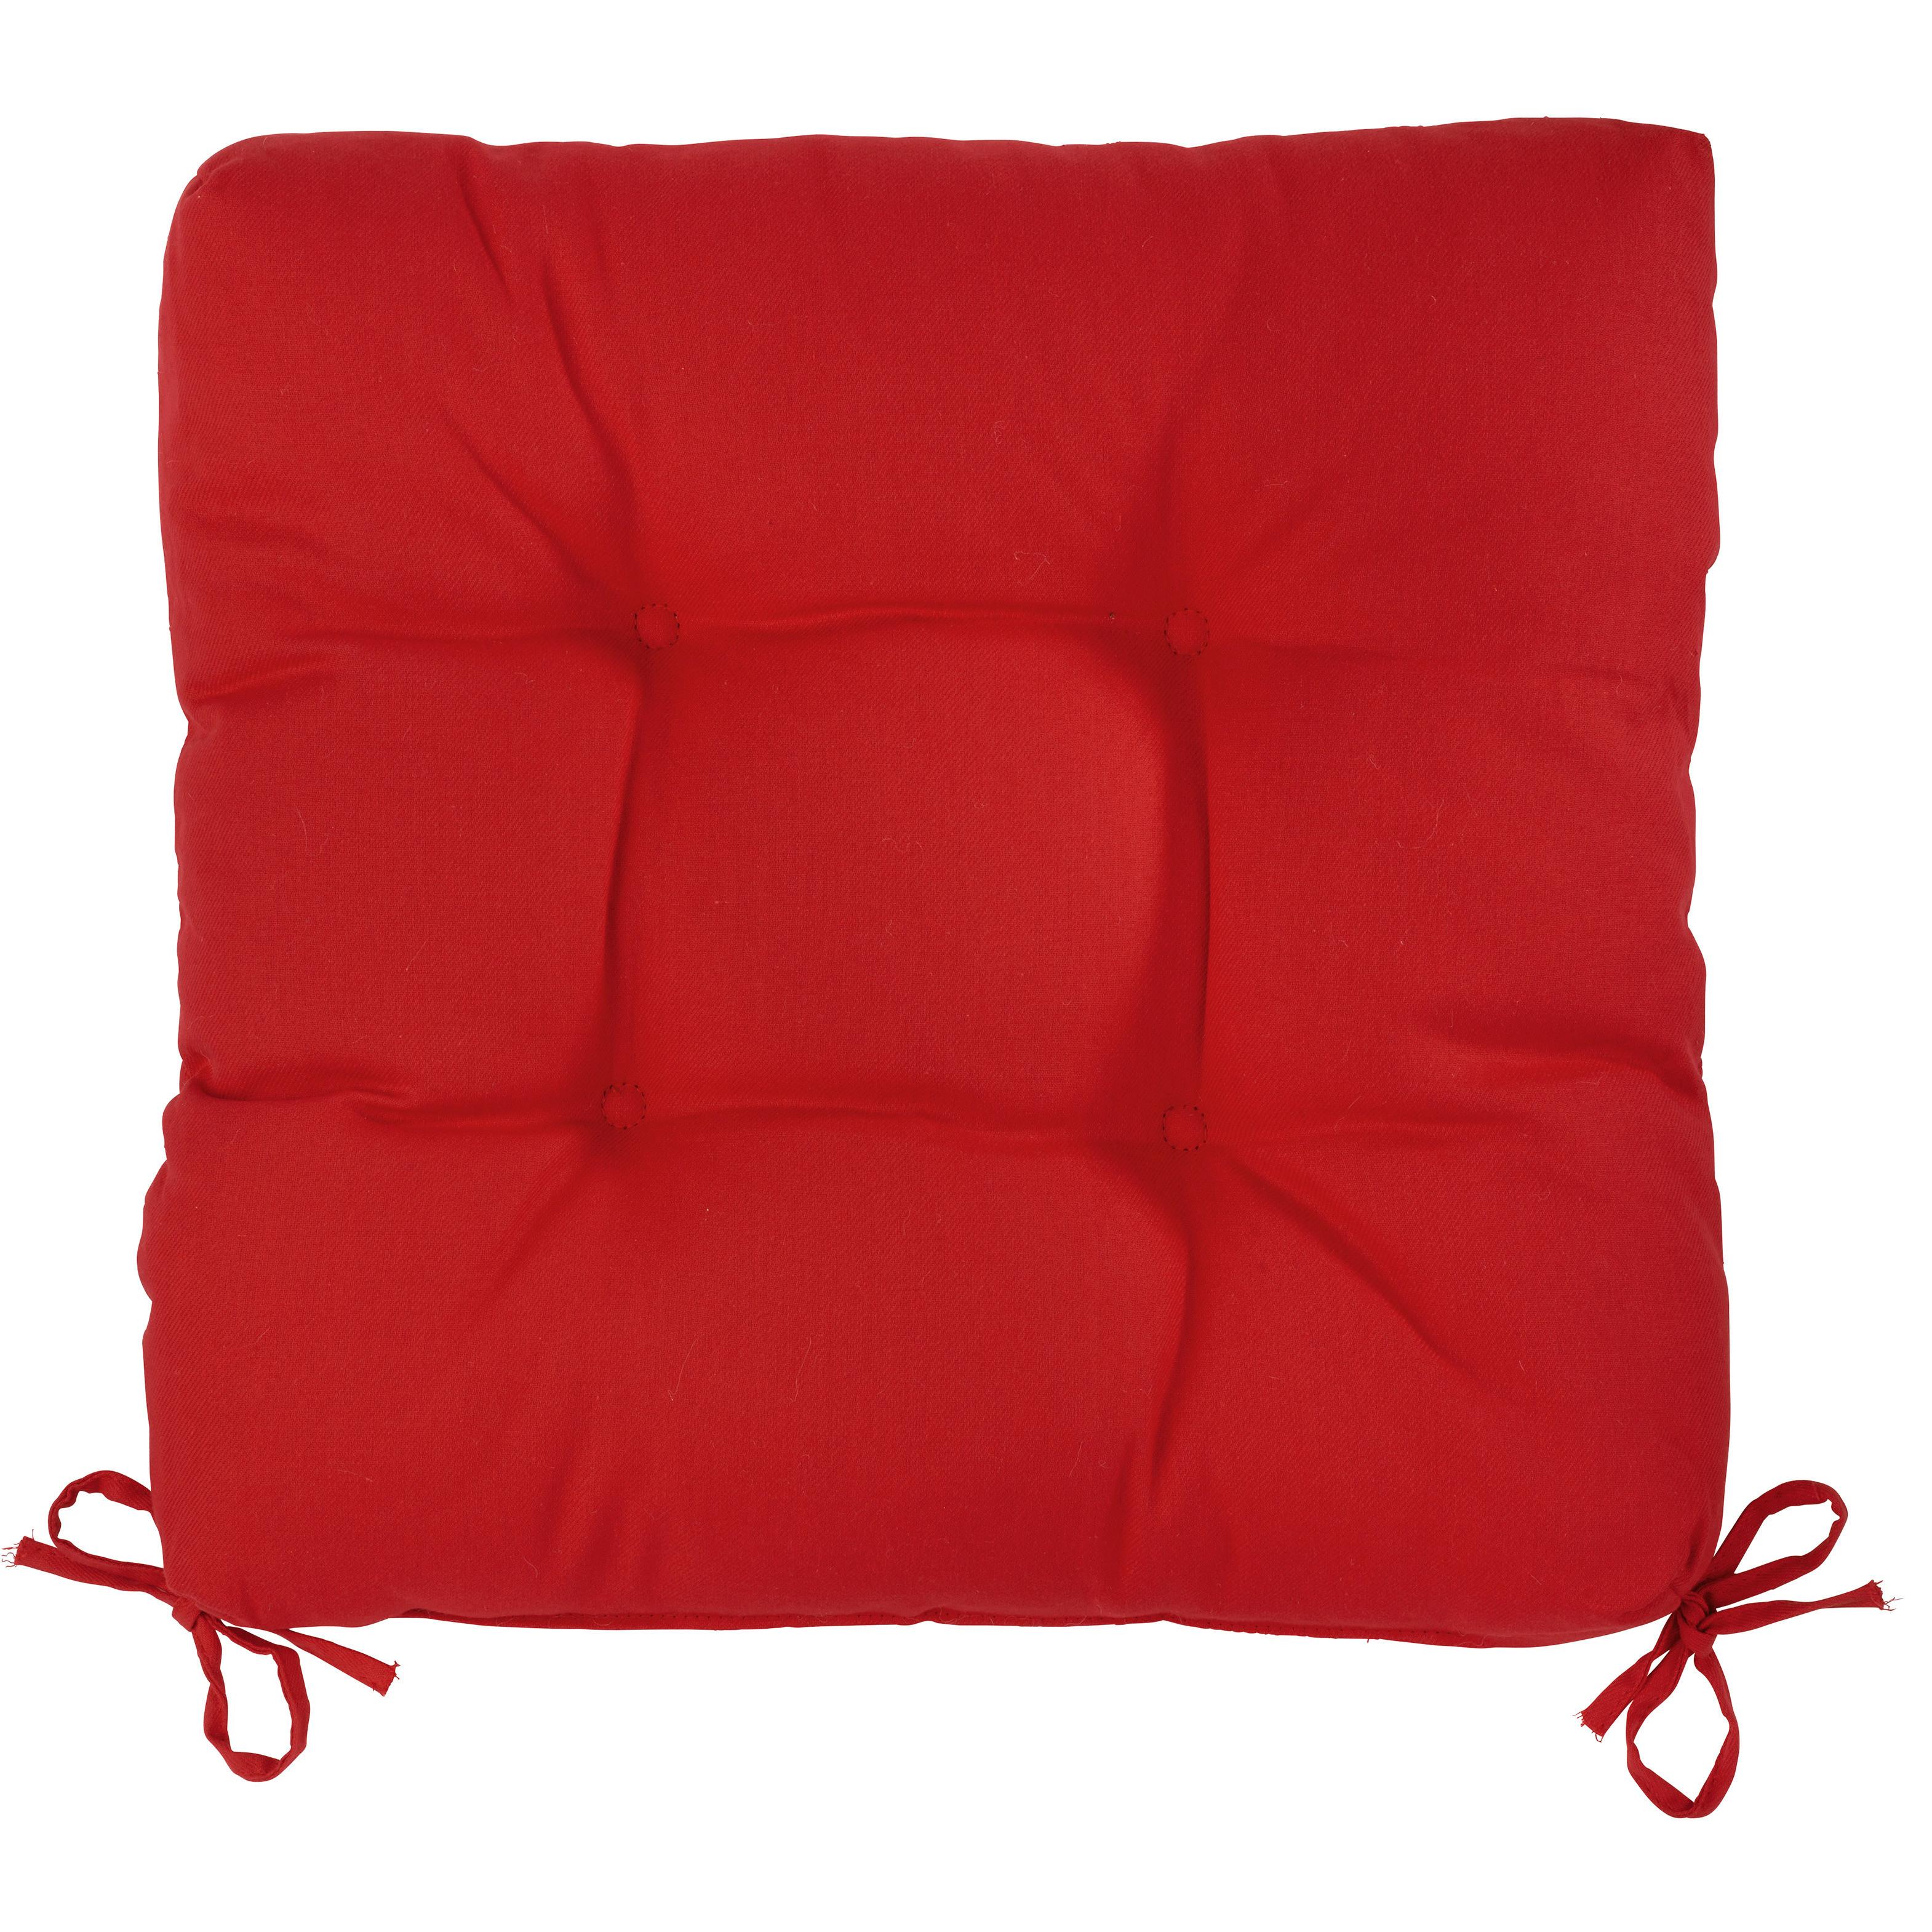 Poduška Na Sedenie Elli, 40x7x40cm - červená, textil (40/40/7cm) - Modern Living